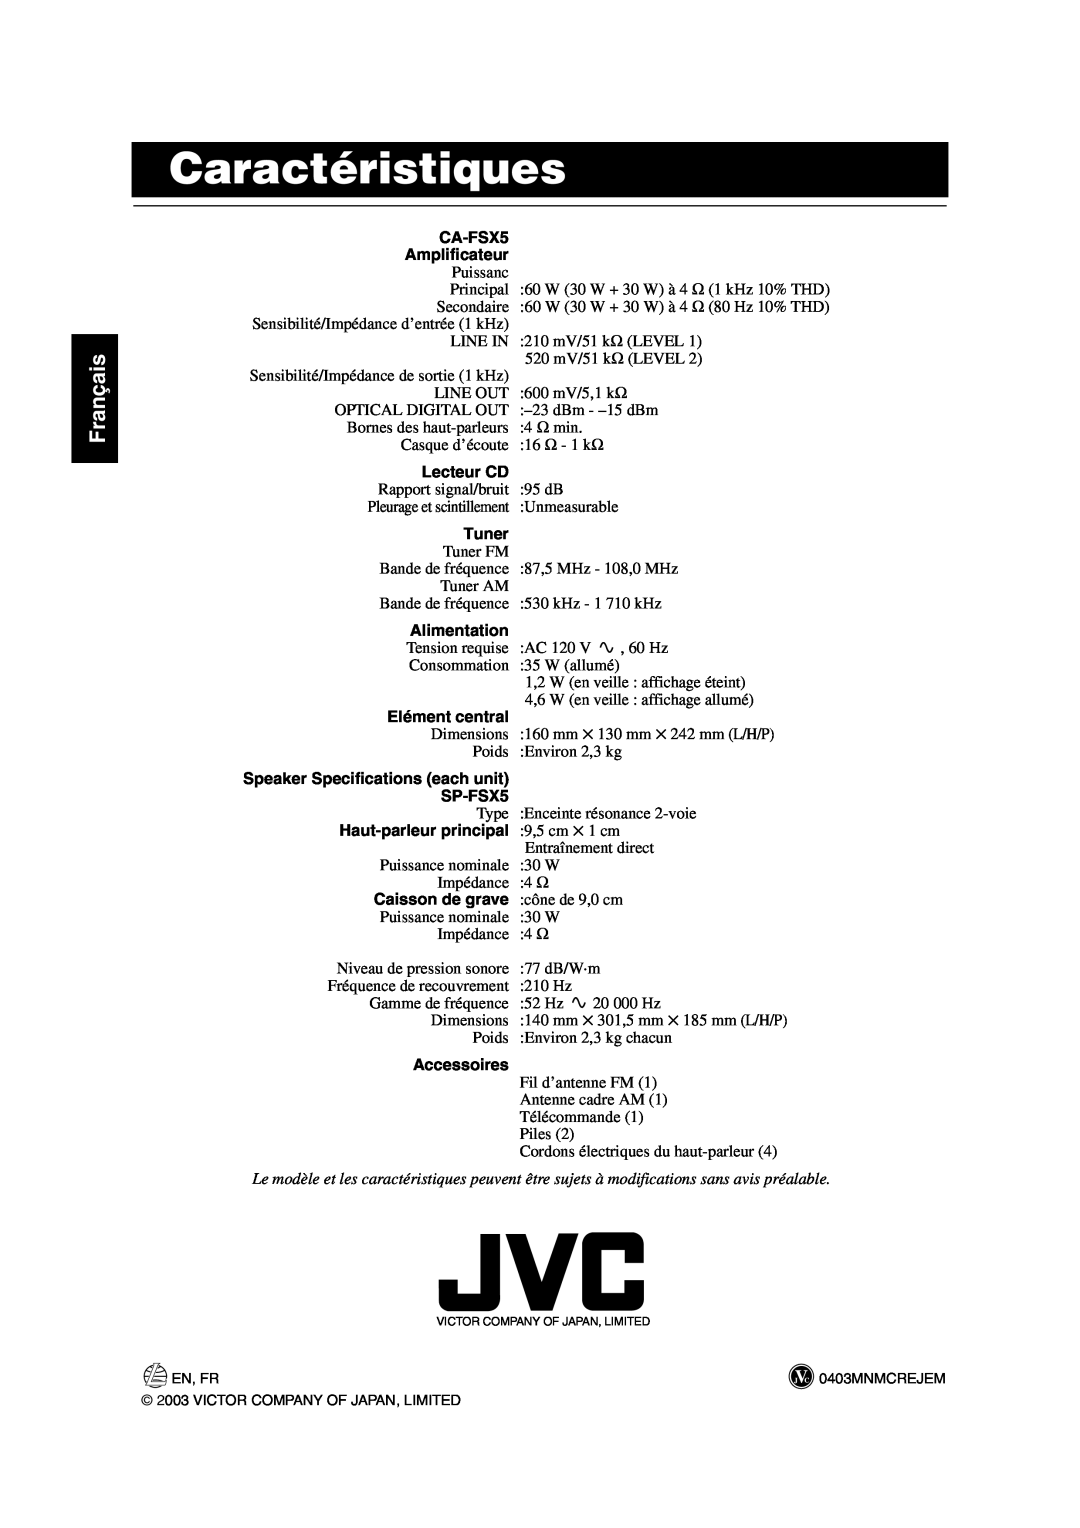 JVC FS-X5 manual Caractéristiques, Français 